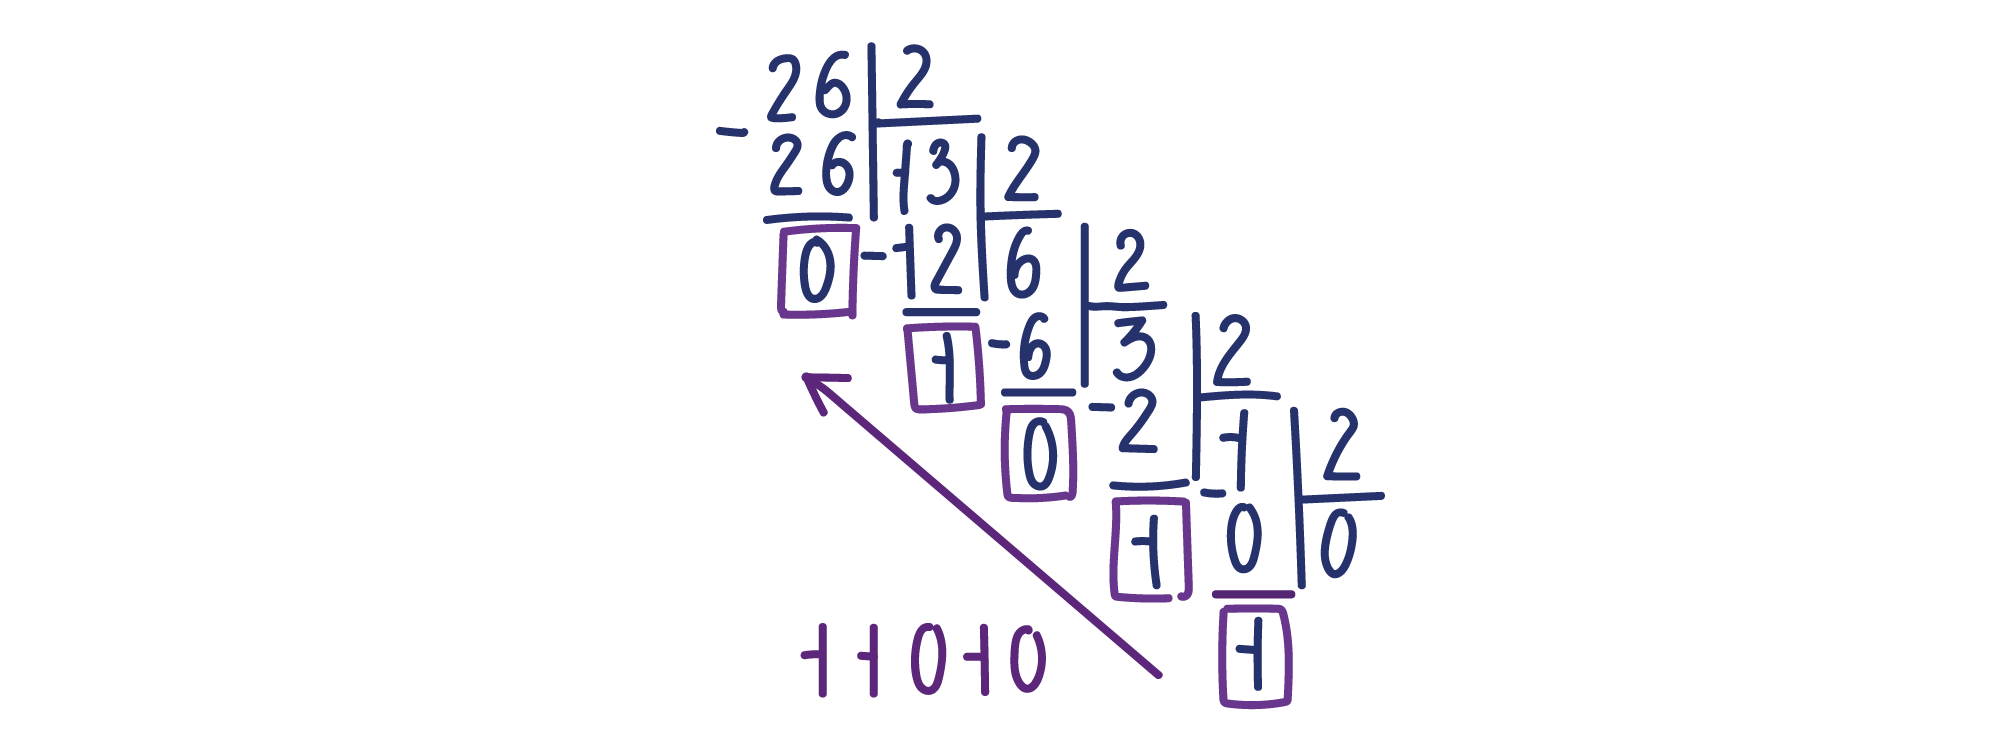 Перевод чисел из двоичной системы счисления в восьмеричную и шестнадцатеричную и обратно